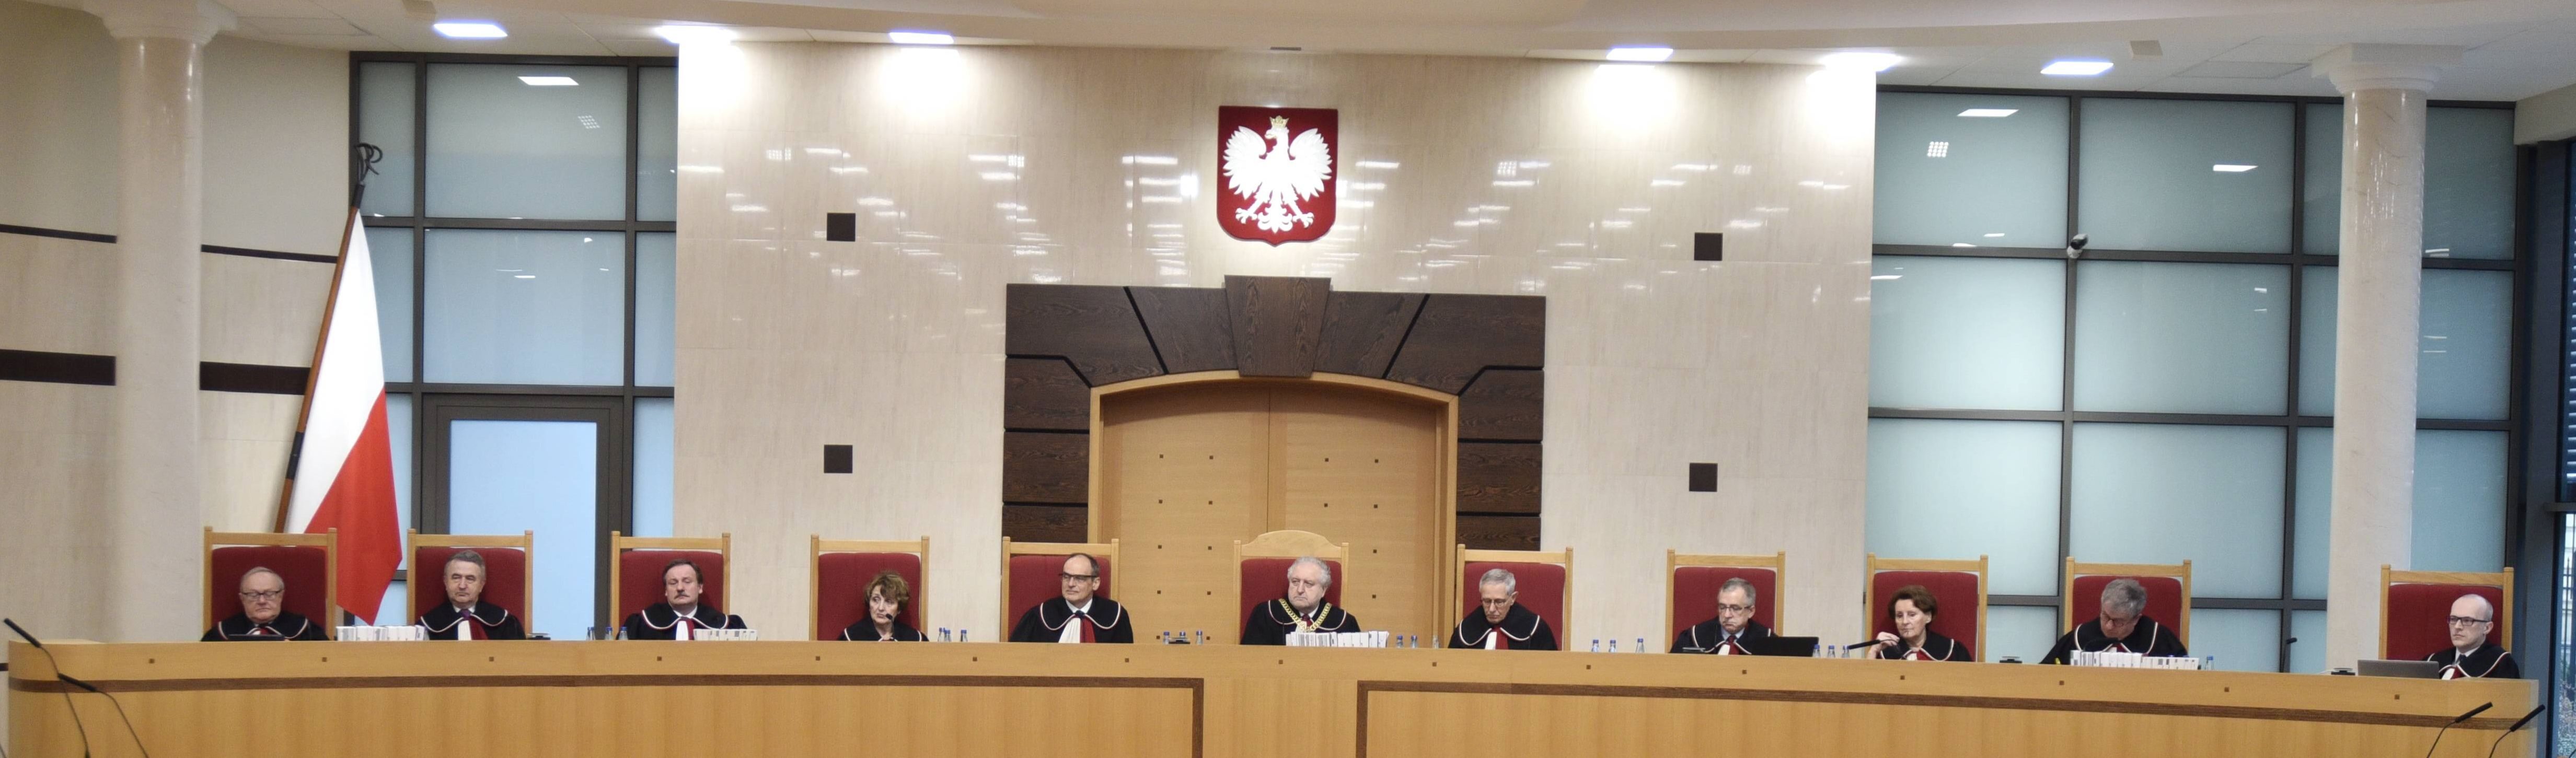 Trybunał Konstytucyjny